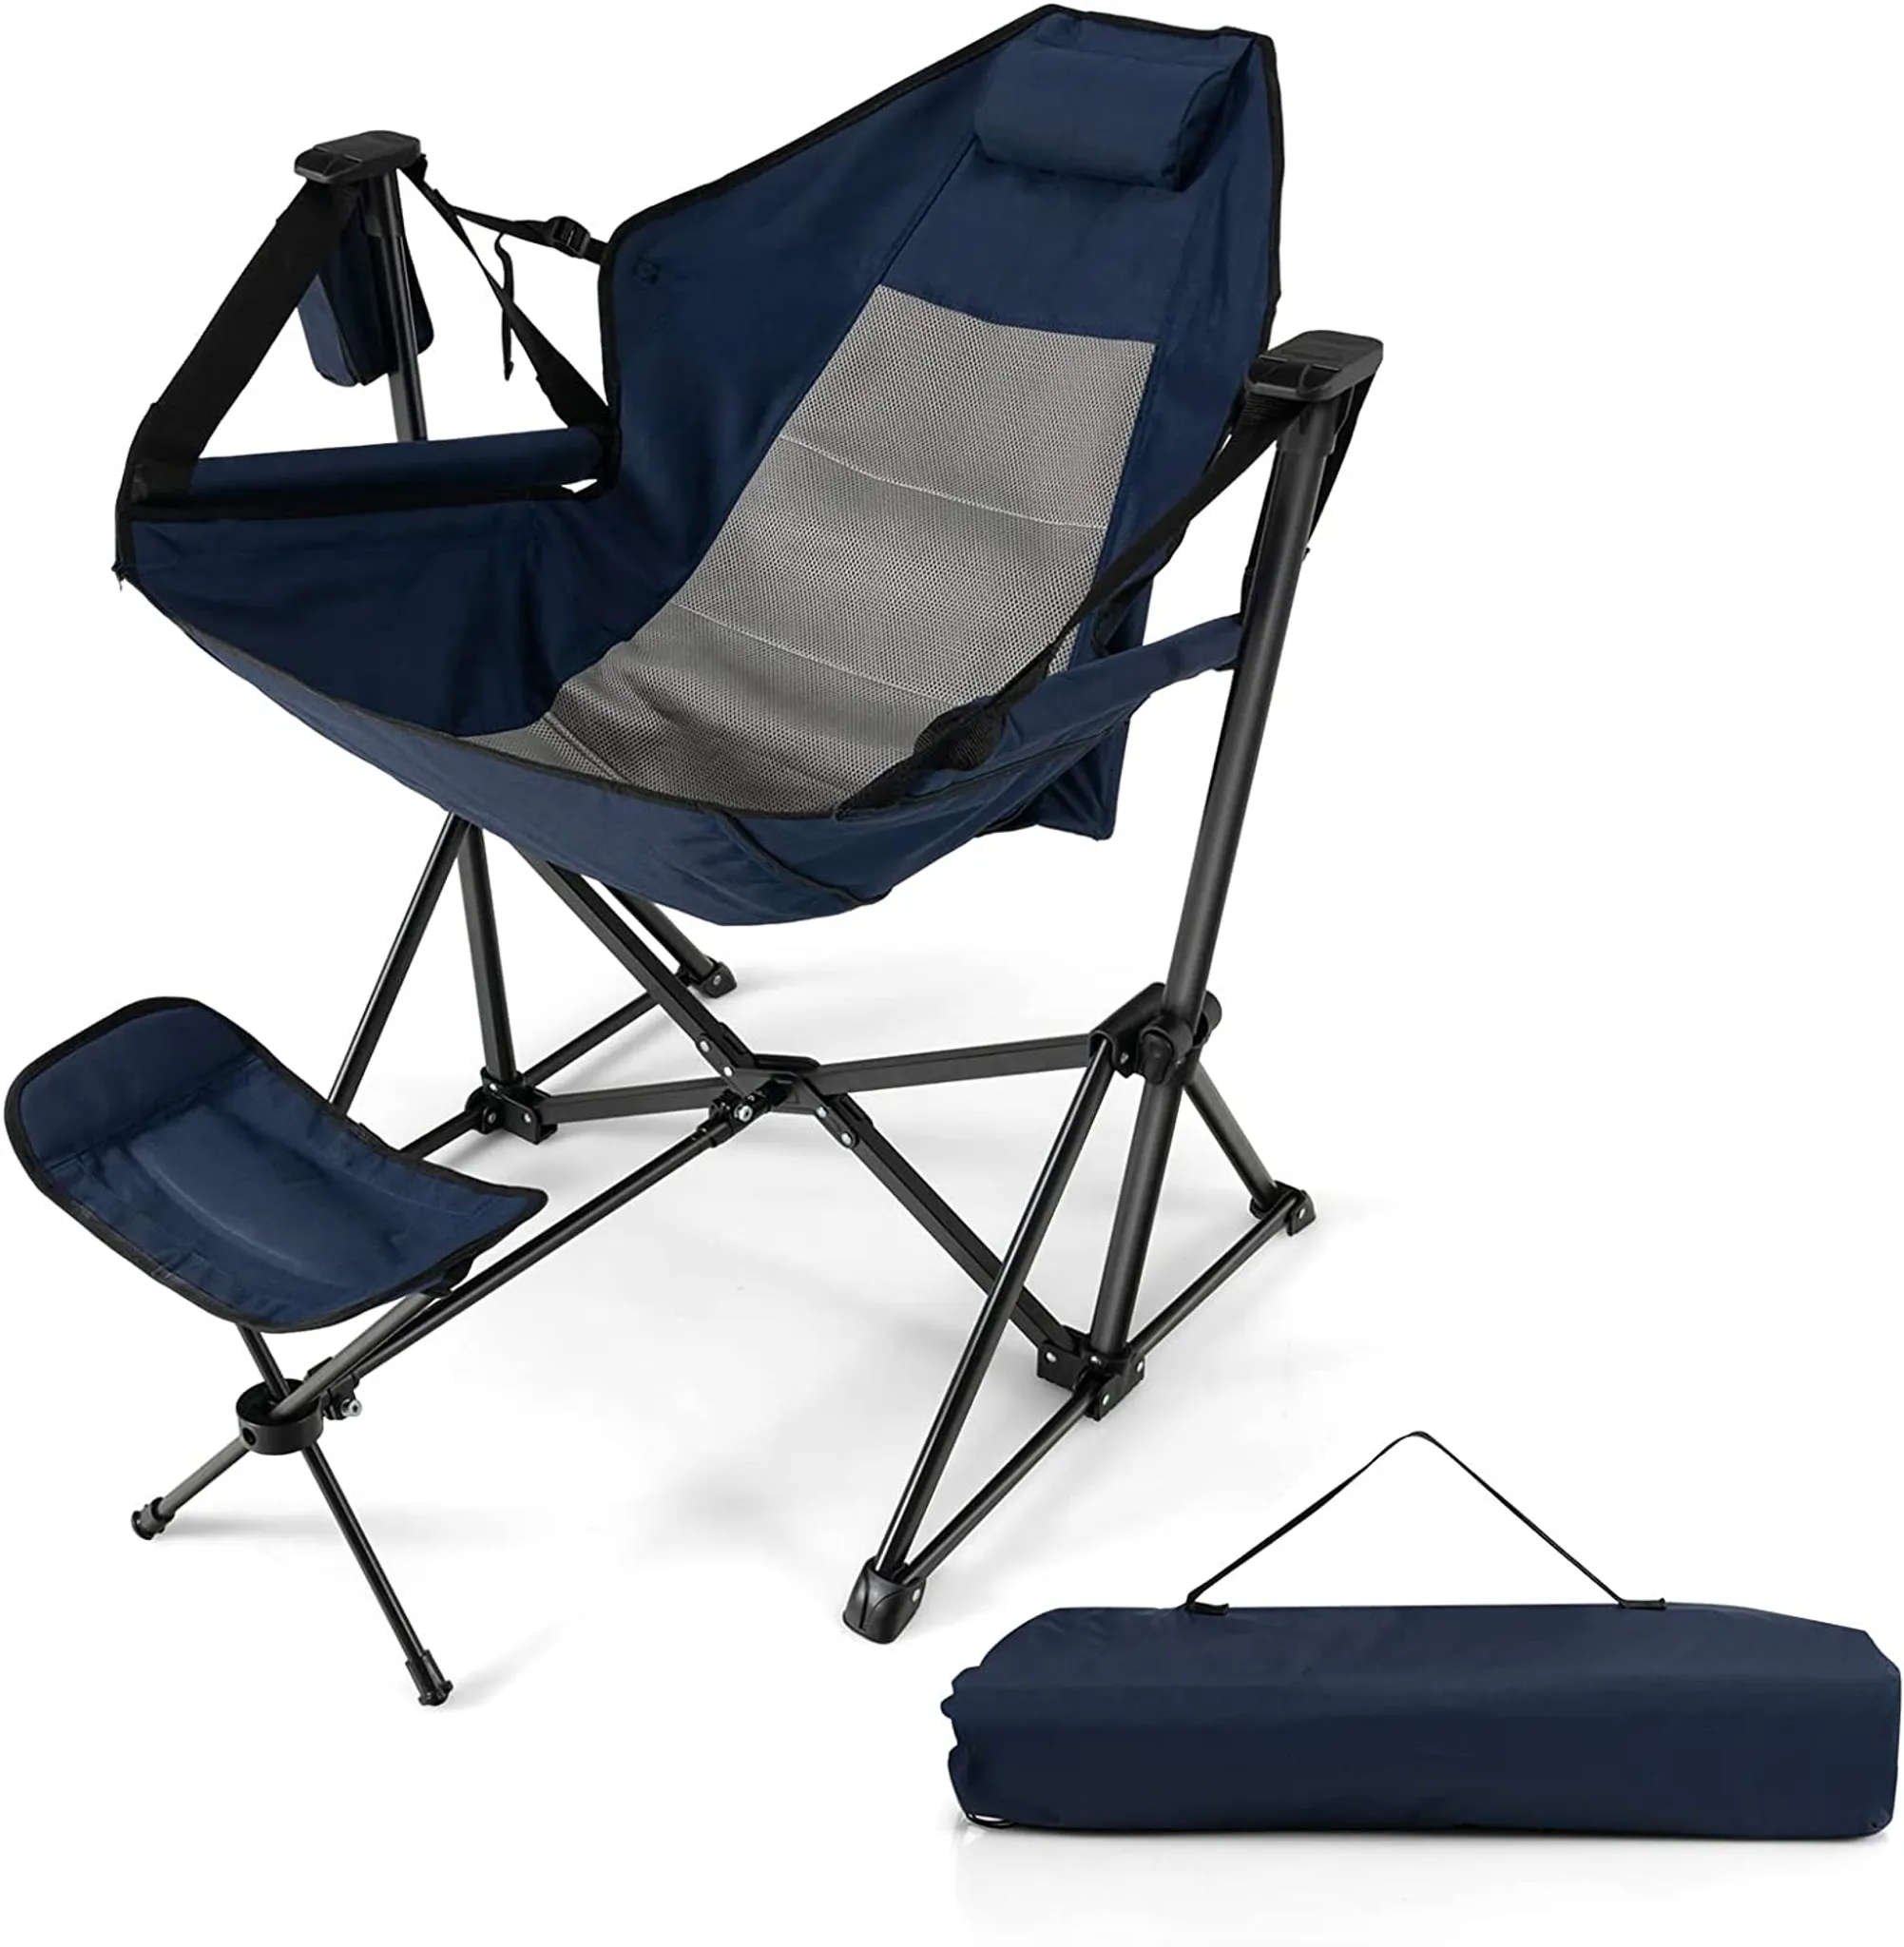 Outdoor Moon Stuhl faul Fuß schemel tragbare Lounge Stuhl Teleskop Fuß  stütze Camping Auto klappbare Rückenlehne Zubehör